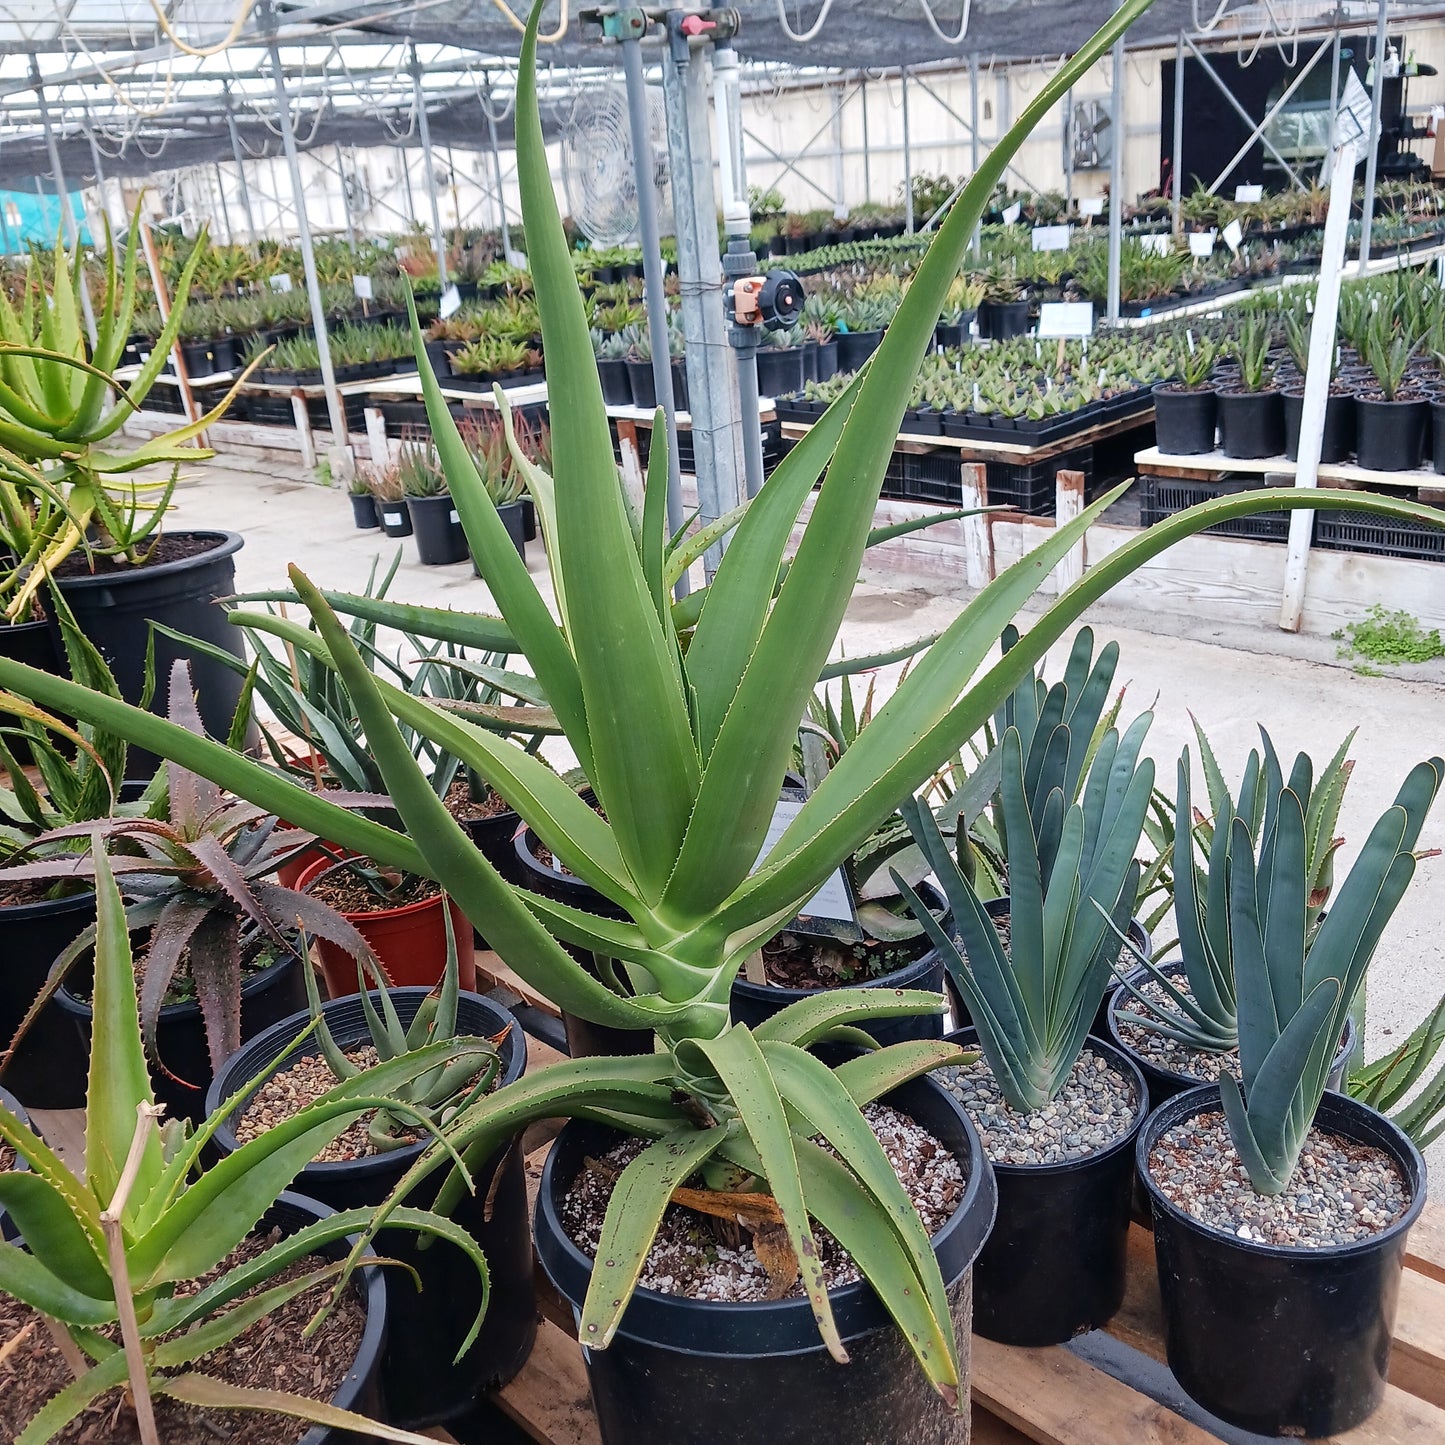 Aloe tongaenesis "Medusa" in 7 gal nursery pot